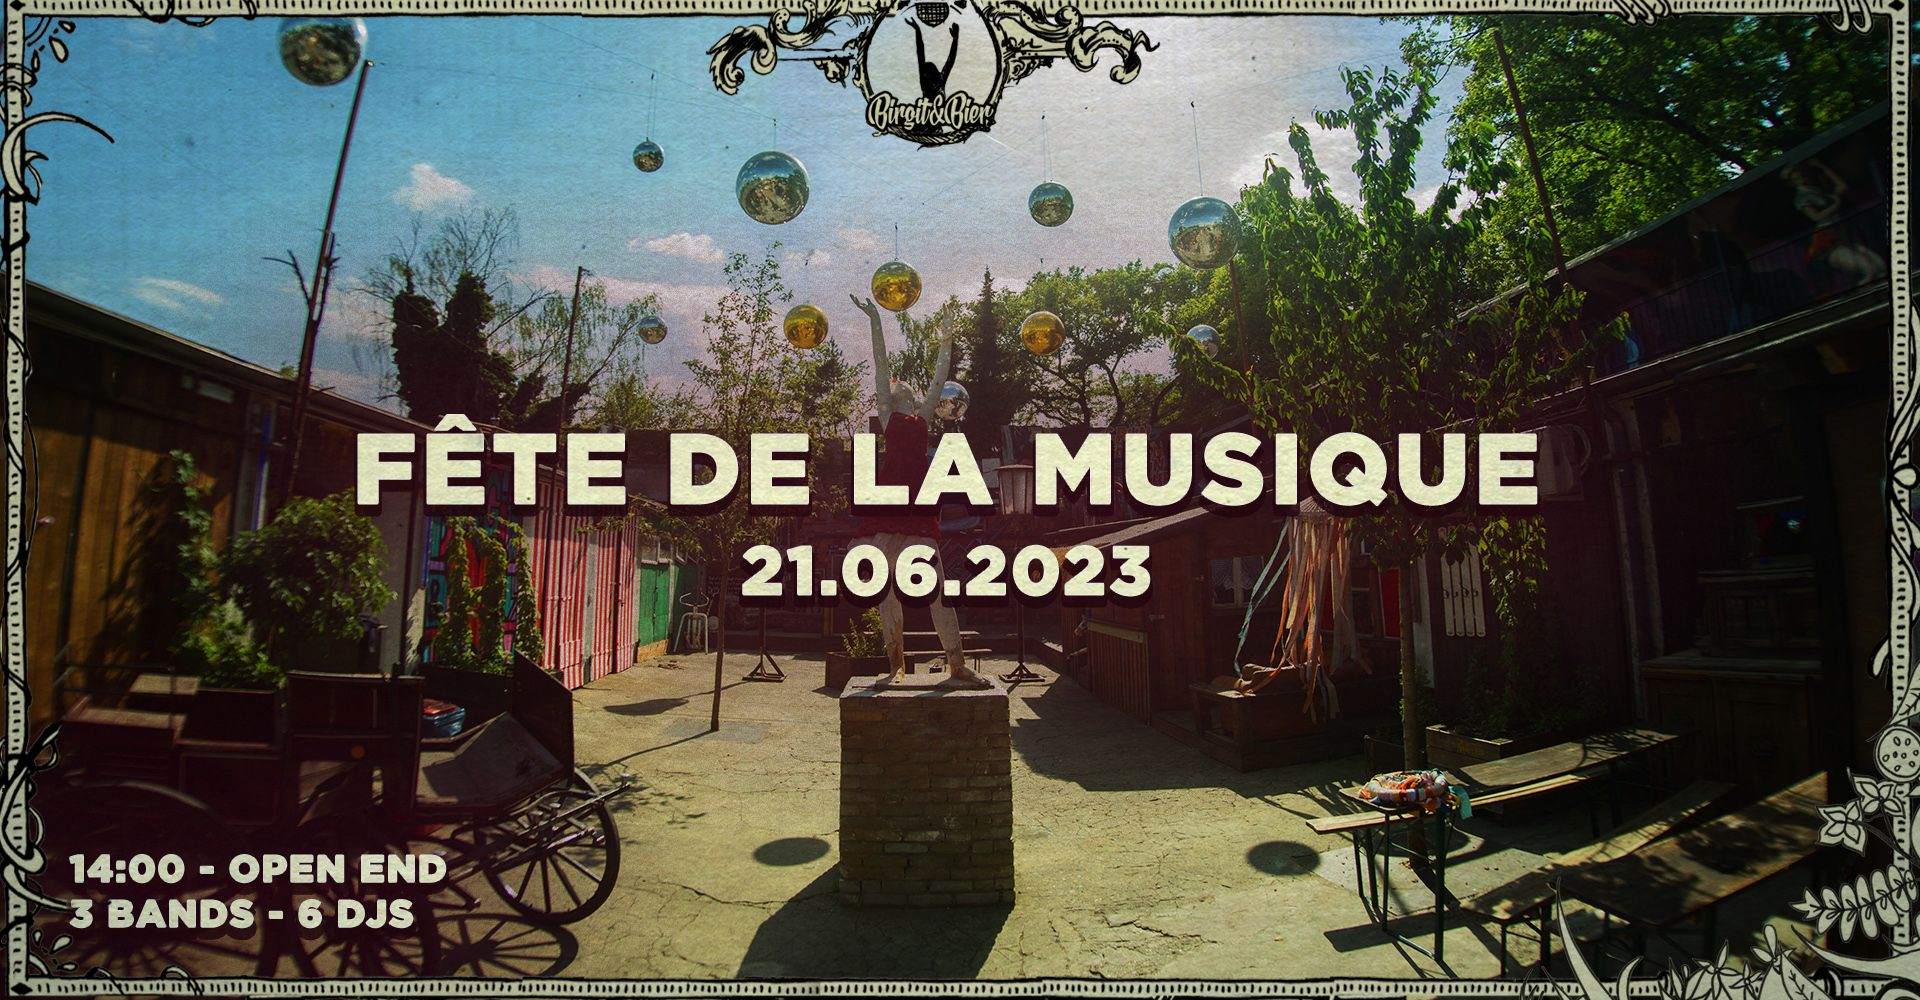 Fête de la Musique + Afterparty (free entry) - フライヤー表